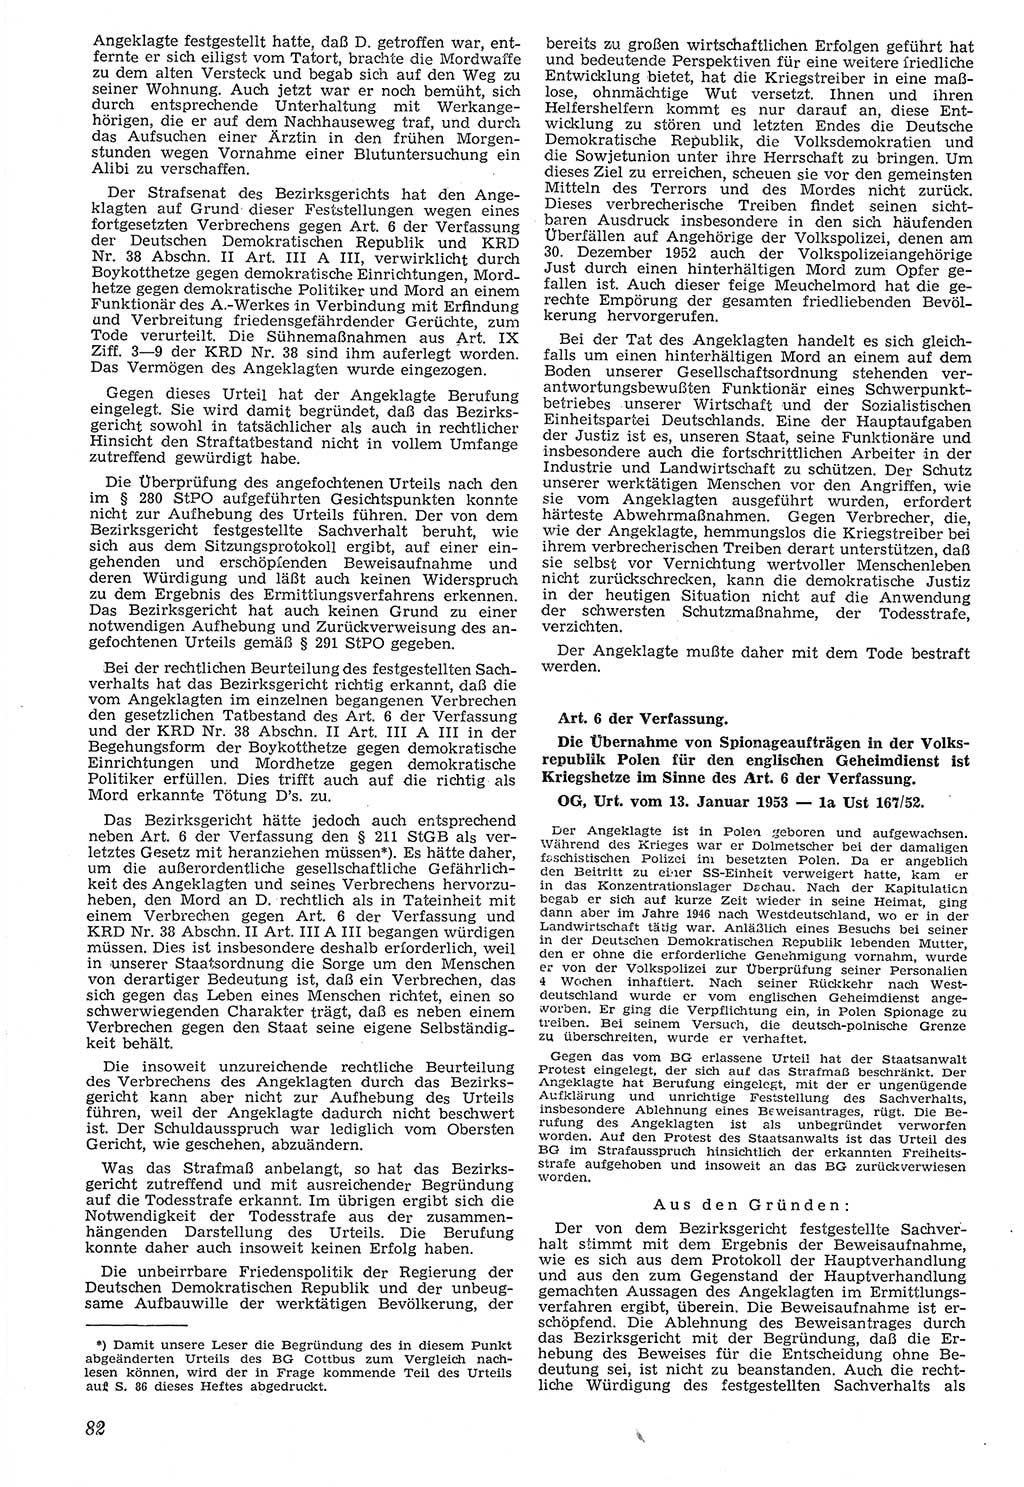 Neue Justiz (NJ), Zeitschrift für Recht und Rechtswissenschaft [Deutsche Demokratische Republik (DDR)], 7. Jahrgang 1953, Seite 82 (NJ DDR 1953, S. 82)